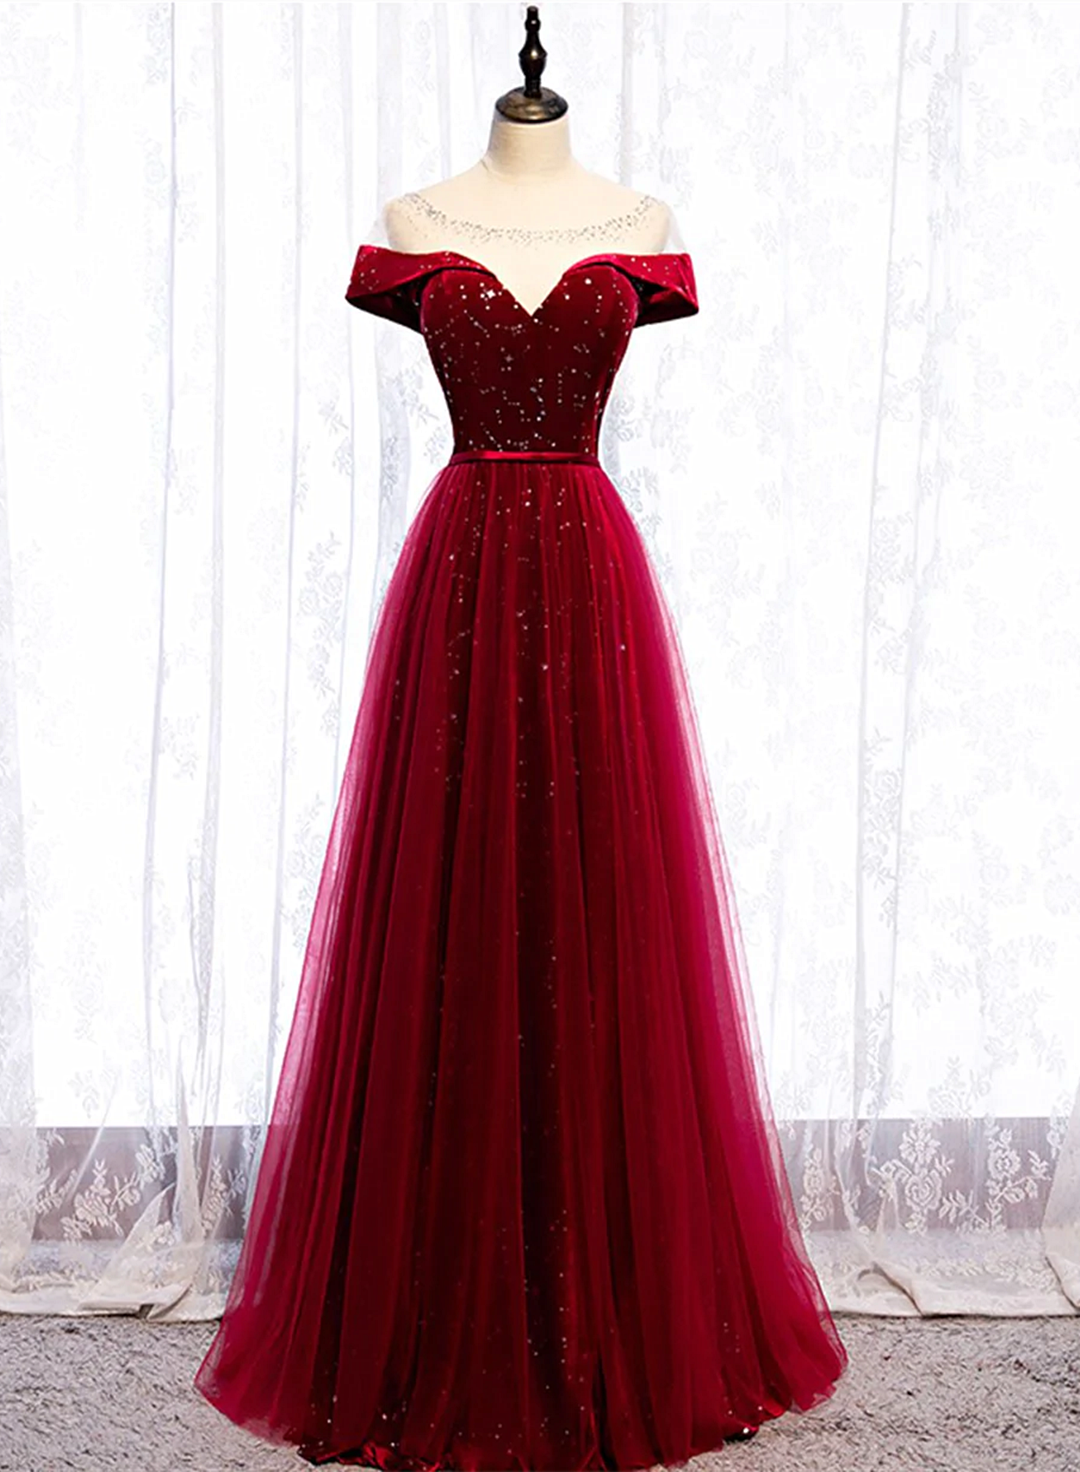 Burgundy Velvet And Tulle Long Formal Dress A-line Floor Length Prom Dress Sa1168